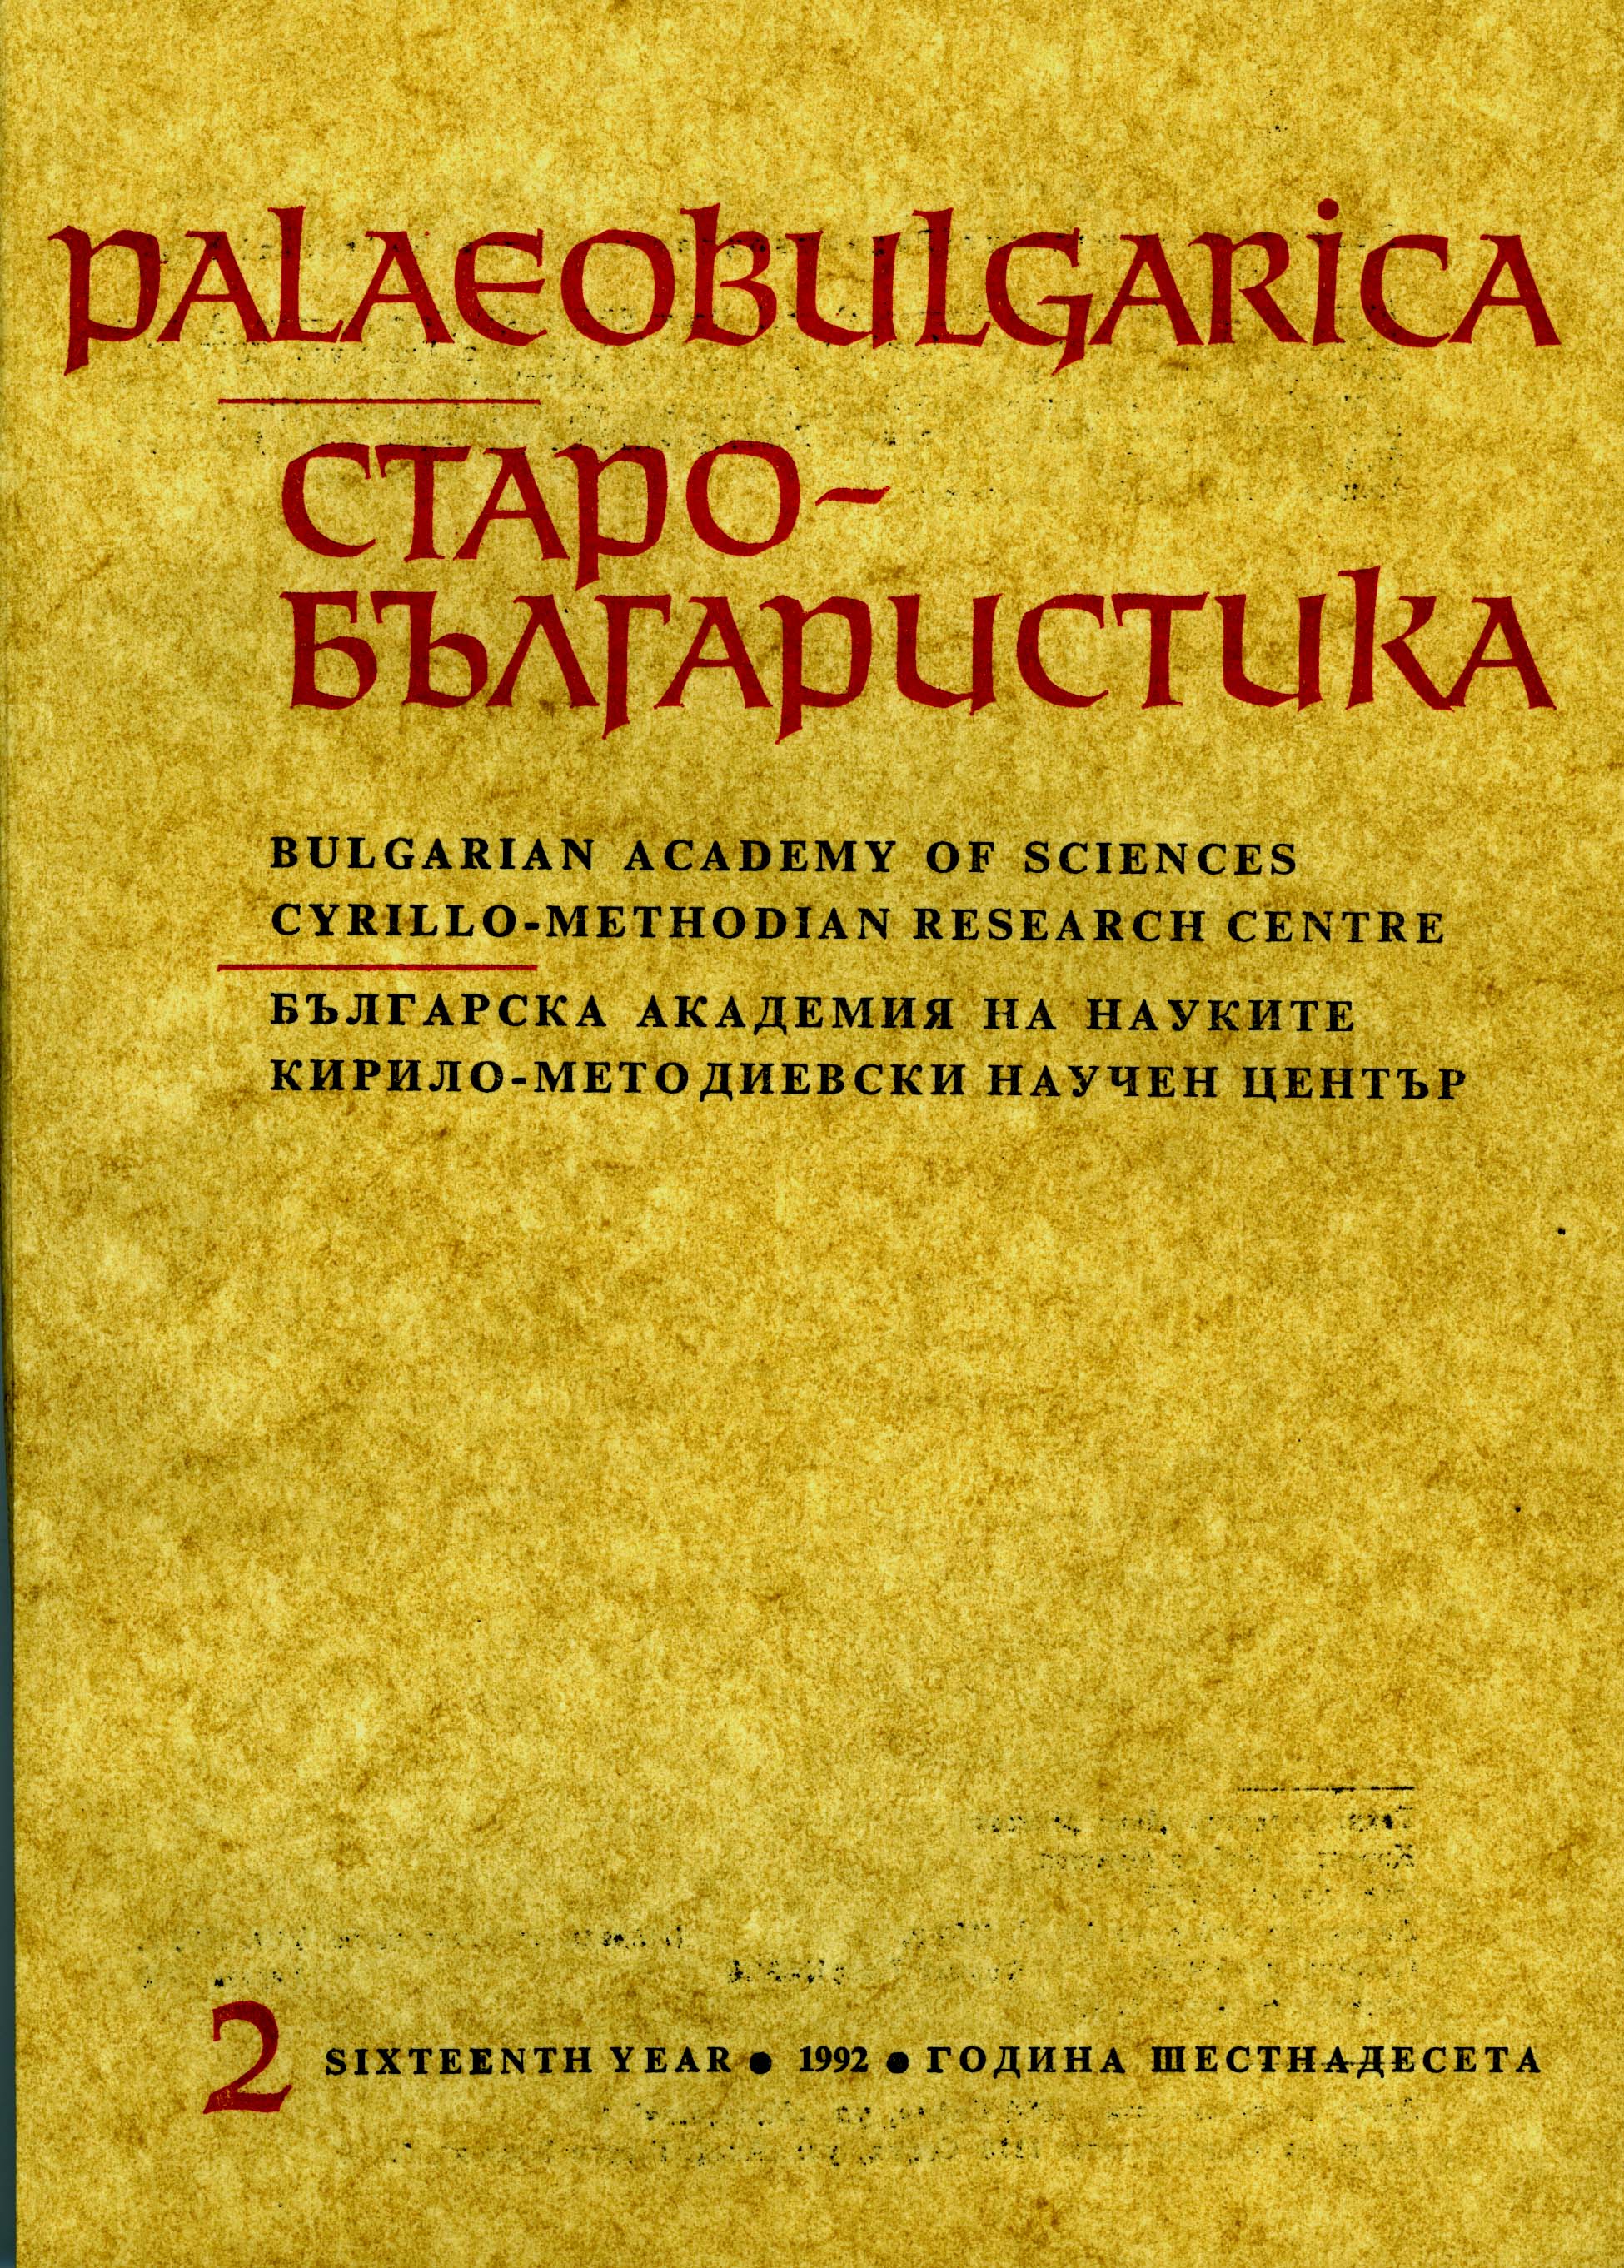 Дело Кирилла и Мефодия и развитие болгарской средневековой литературы